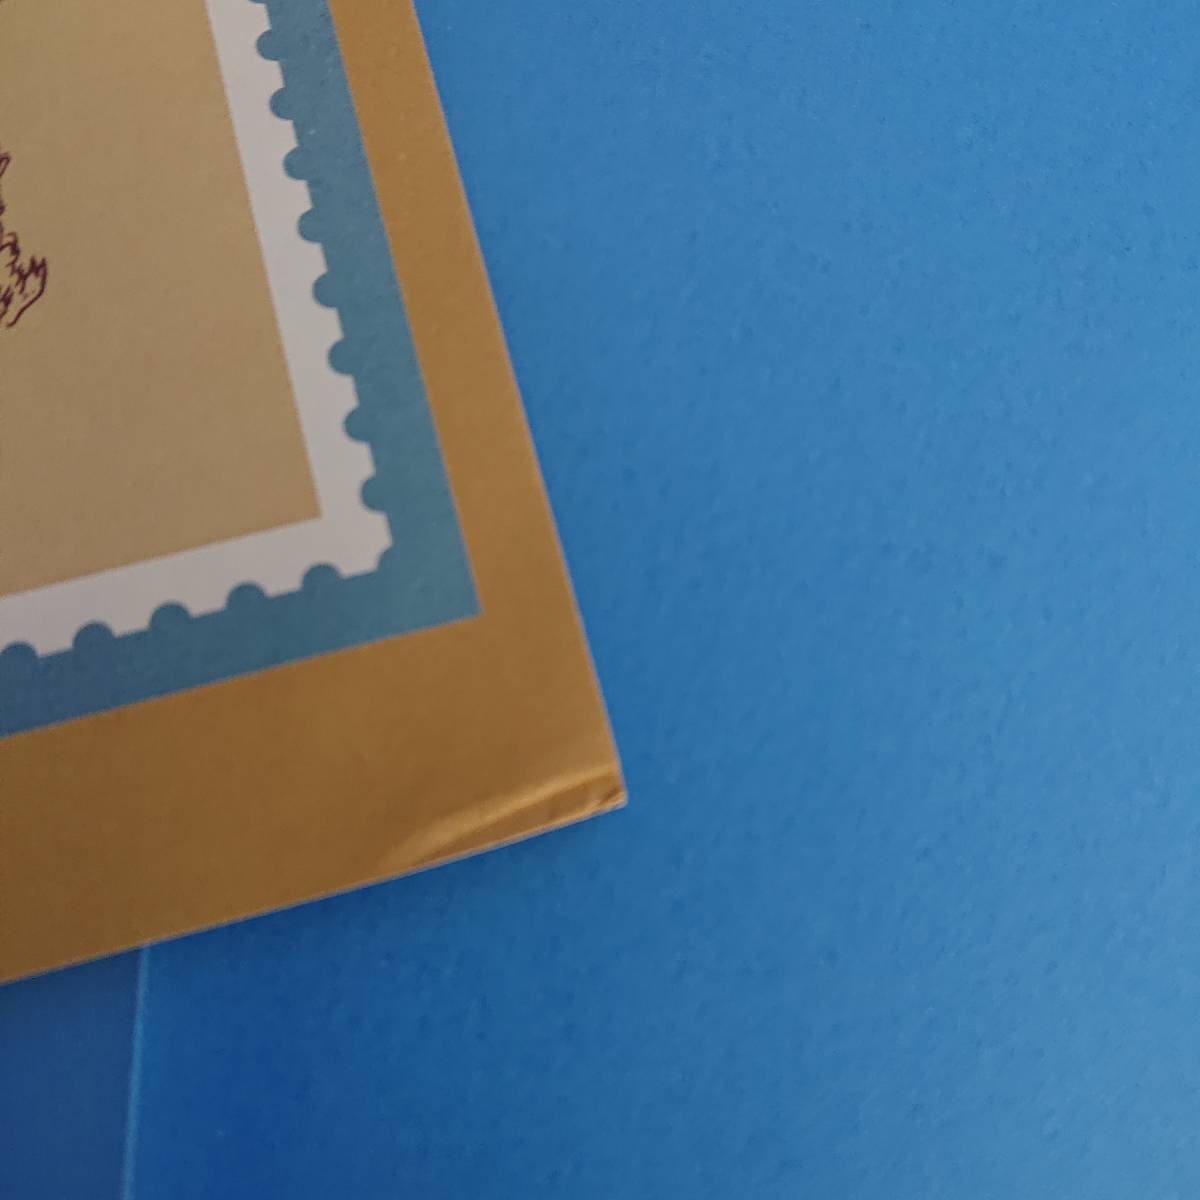 ◇ 郵便切手の歩みシリーズ第６集 80円切手_解説の右下に折れ見られます。